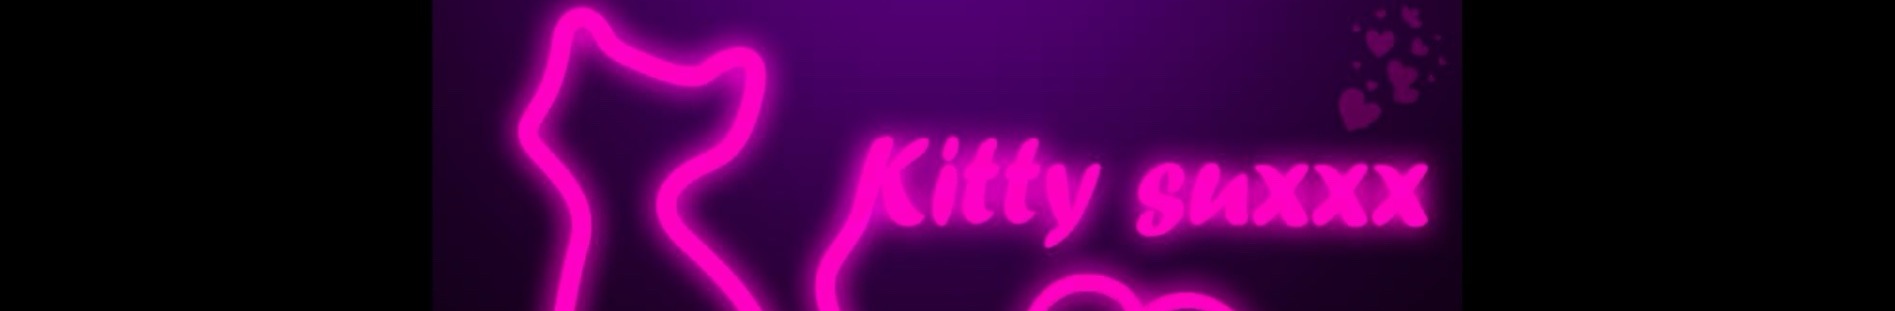 Kitty Suxxx - profile image